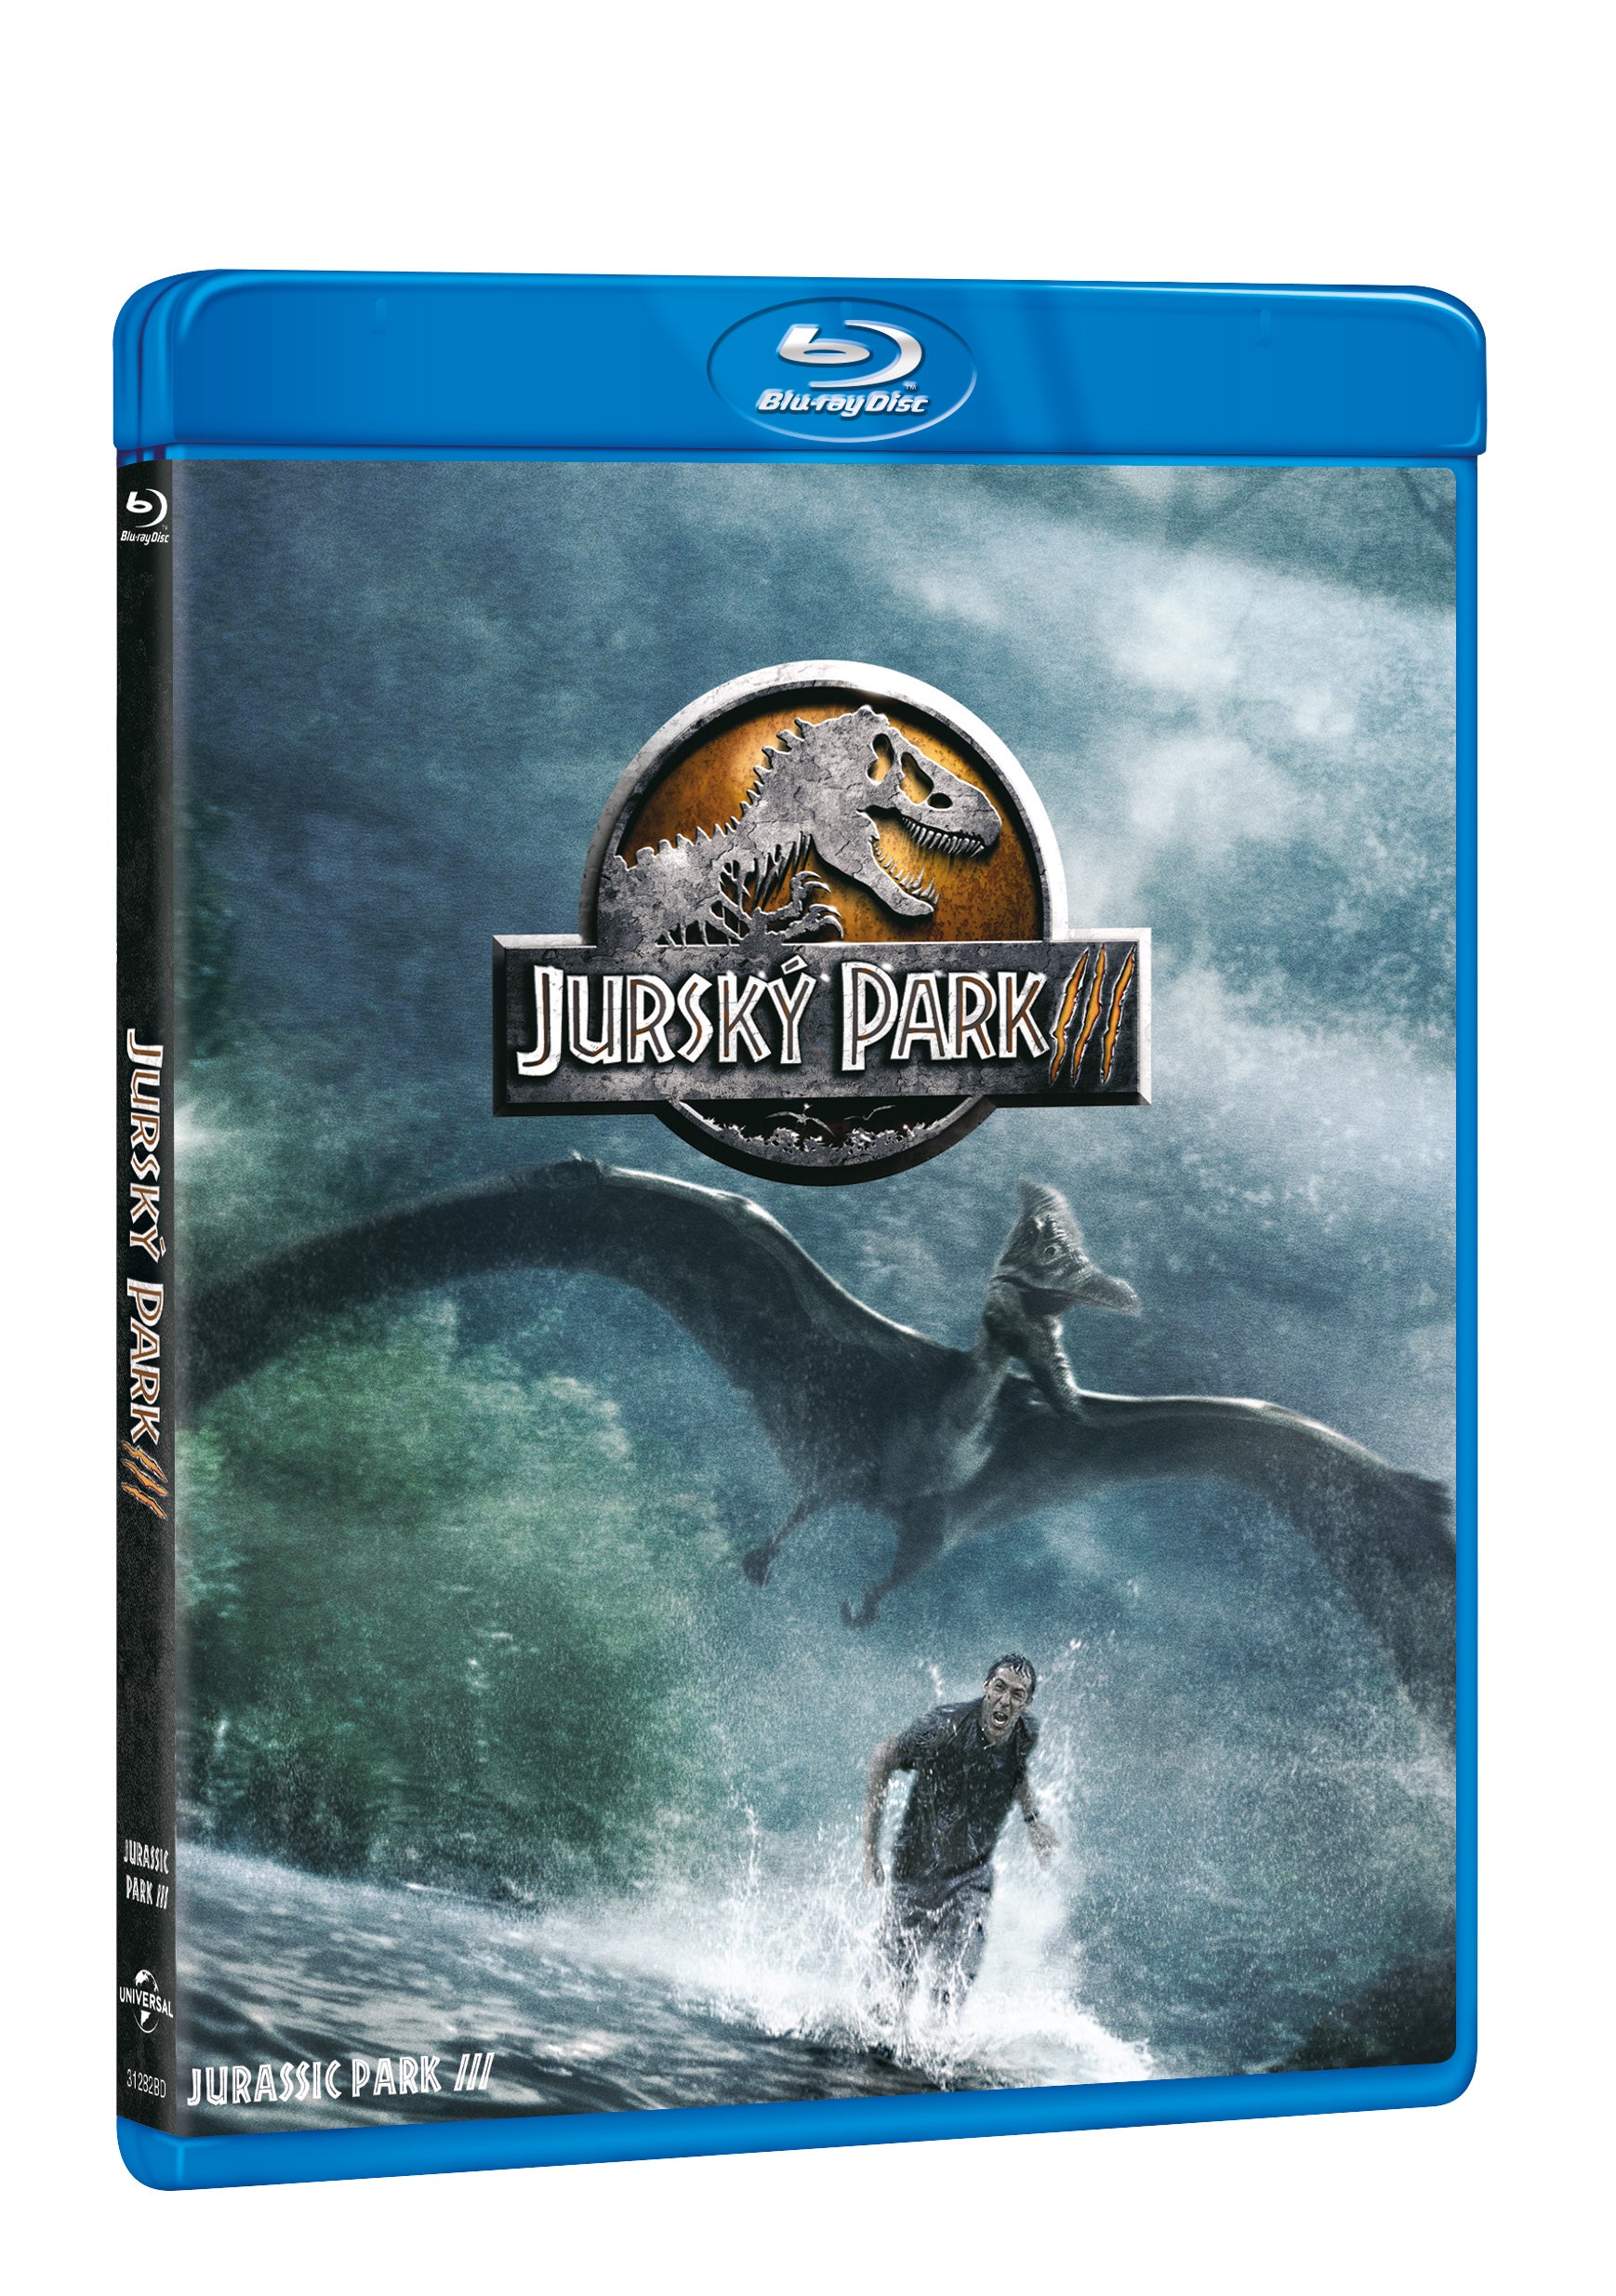 Jursky park 3 BD / Jurassic Park III - Czech version